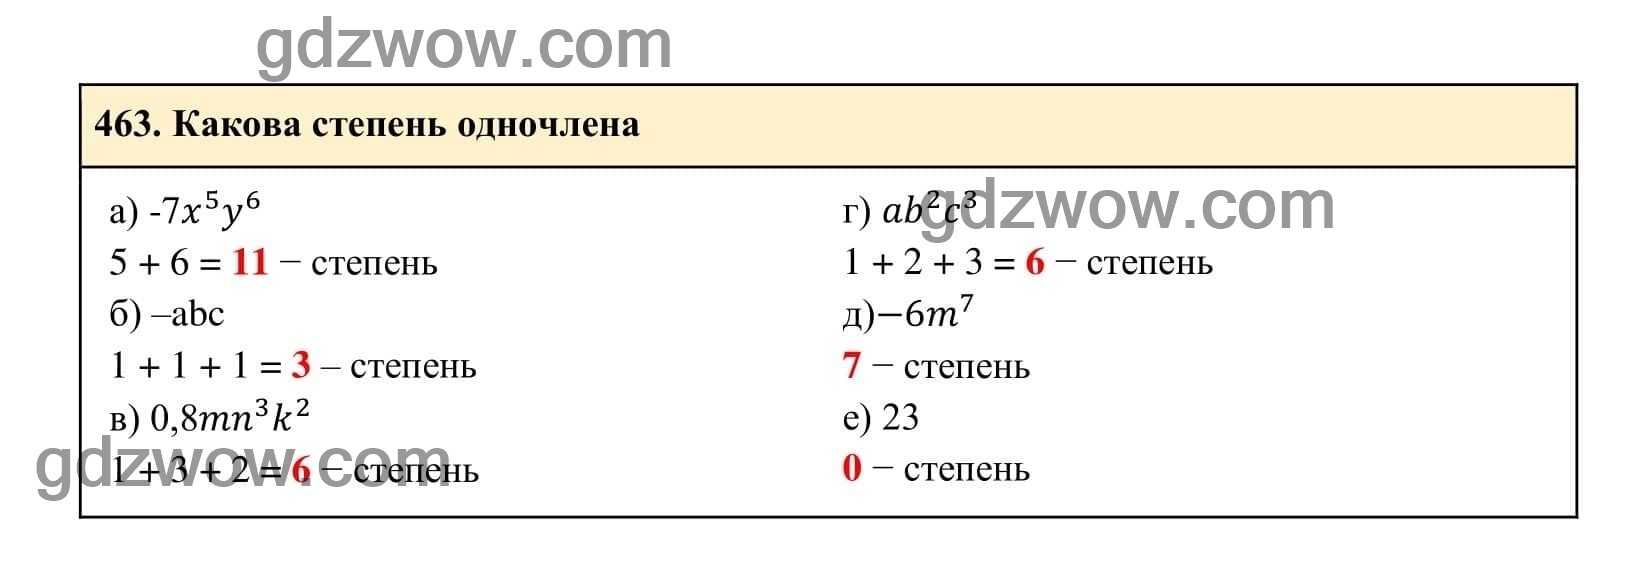 Упражнение 463 - ГДЗ по Алгебре 7 класс Учебник Макарычев (решебник) - GDZwow